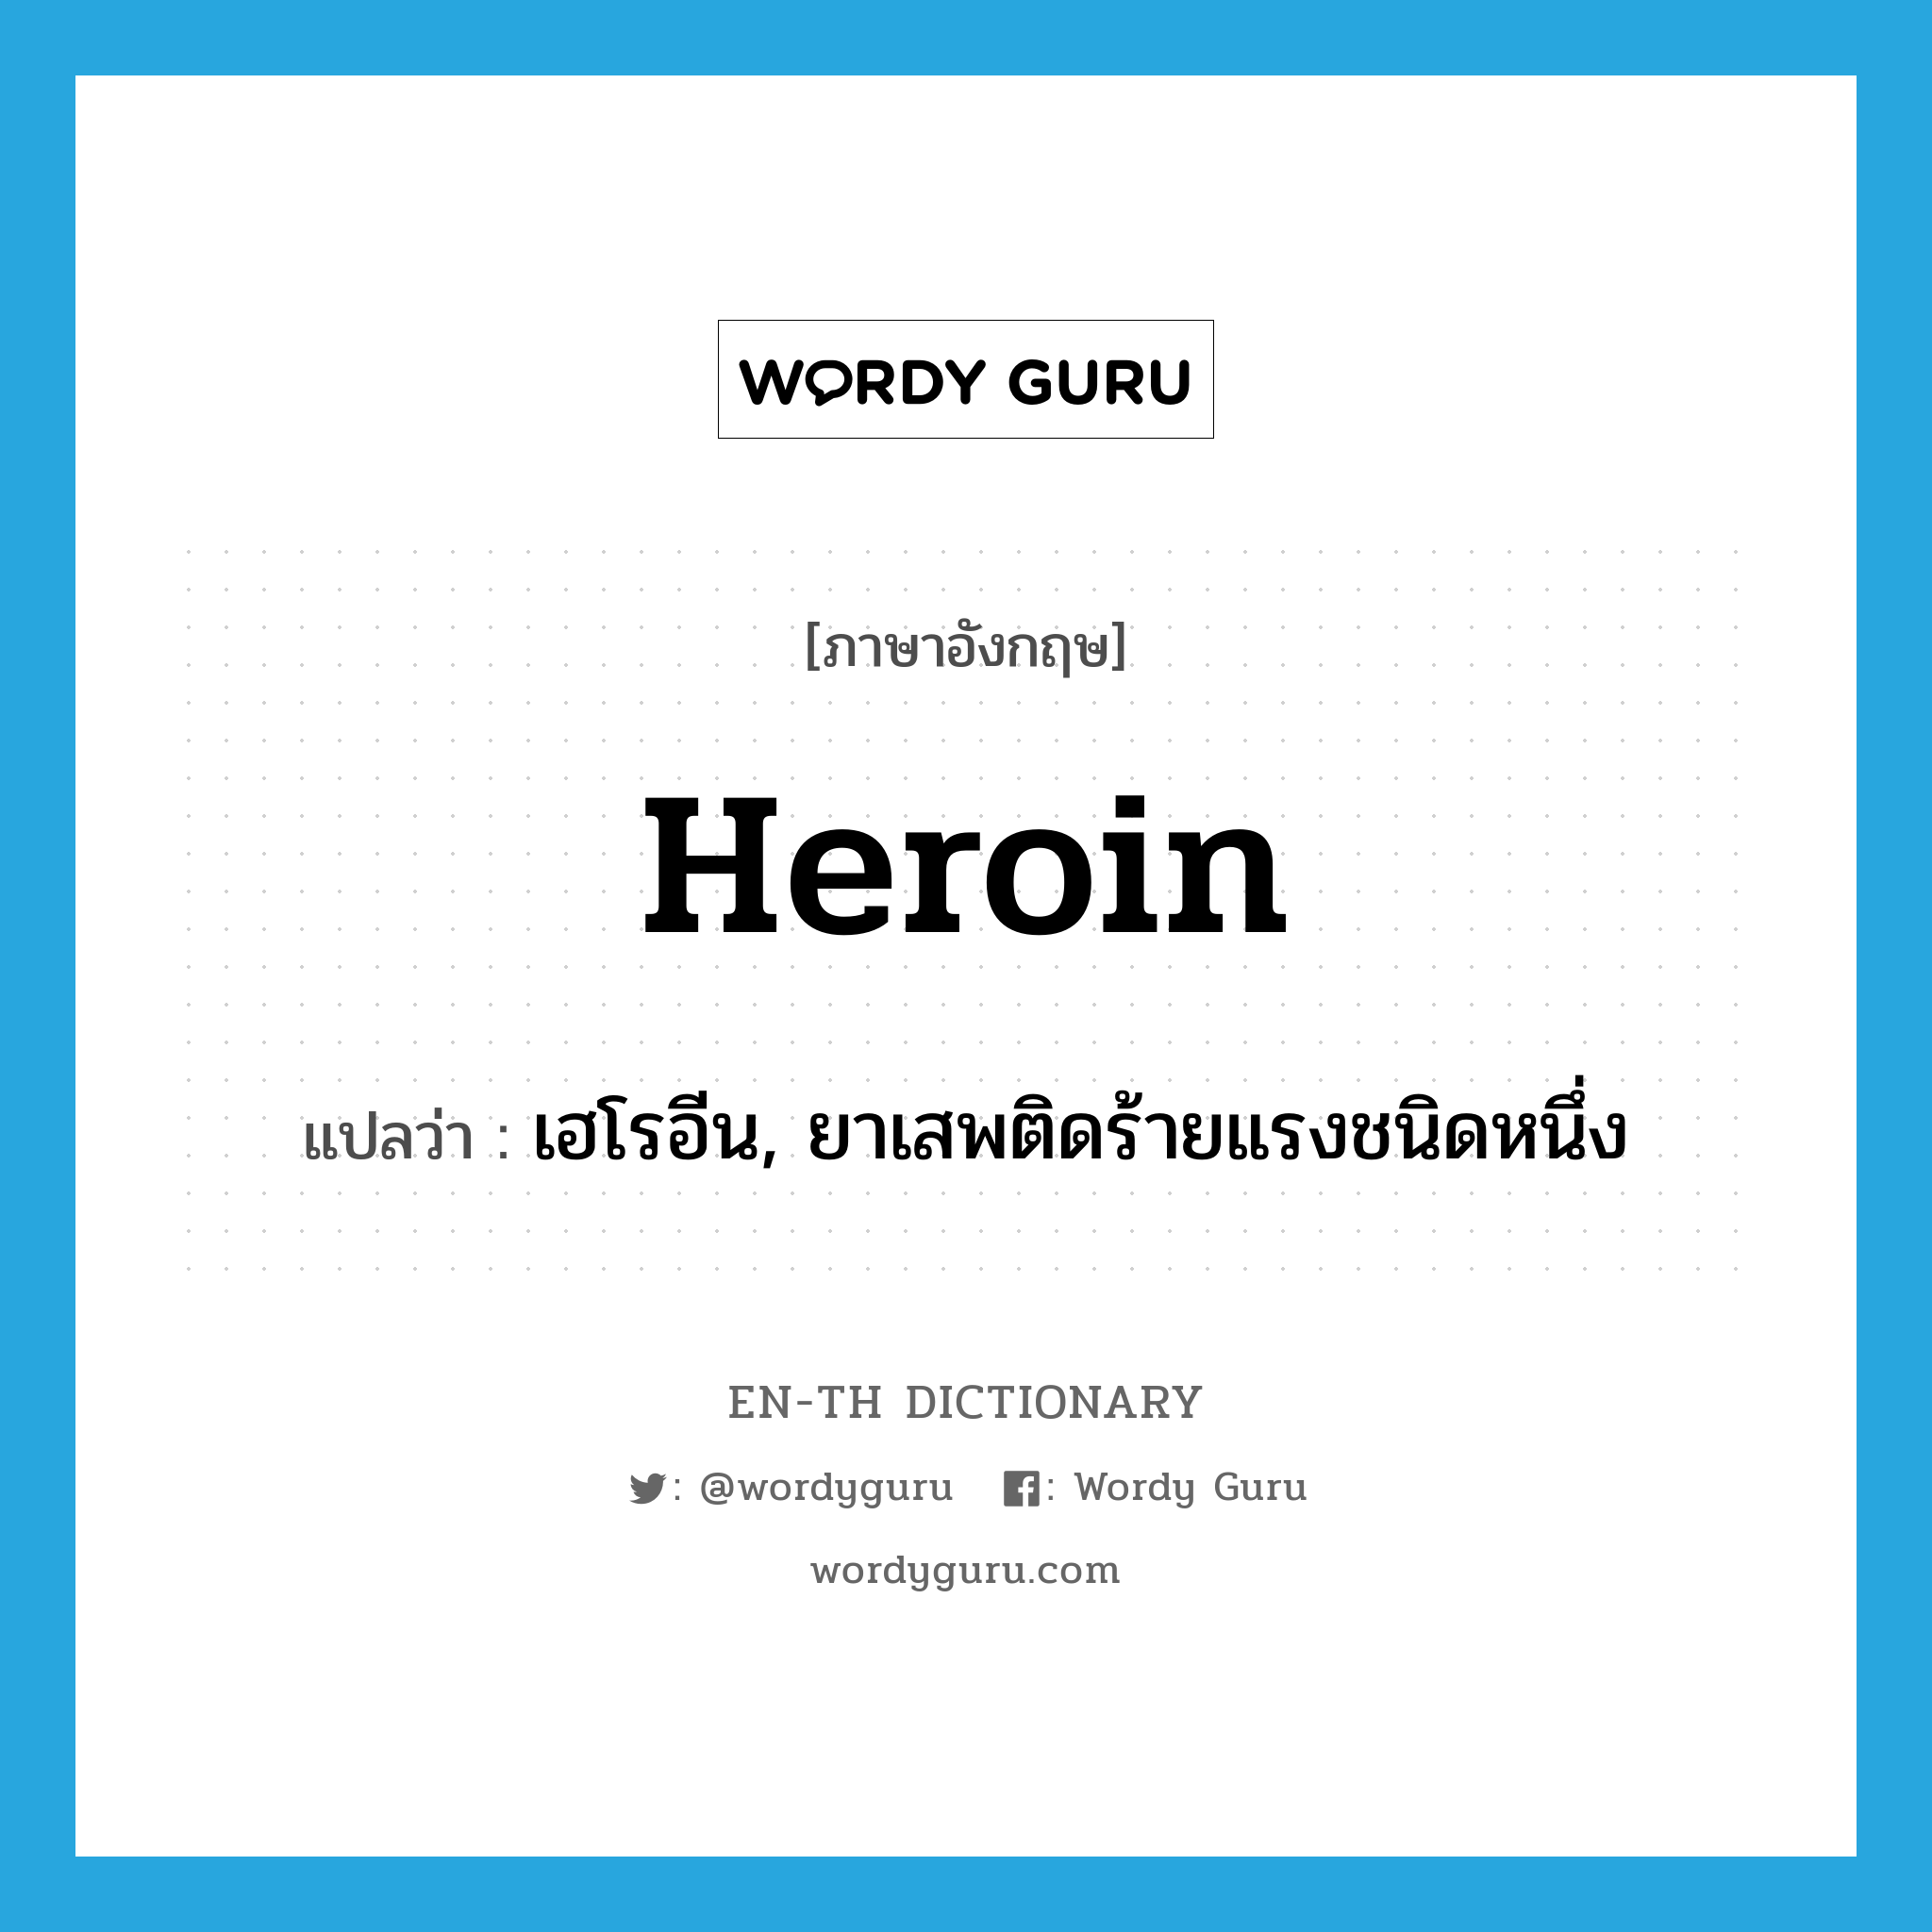 เฮโรอีน, ยาเสพติดร้ายแรงชนิดหนึ่ง ภาษาอังกฤษ?, คำศัพท์ภาษาอังกฤษ เฮโรอีน, ยาเสพติดร้ายแรงชนิดหนึ่ง แปลว่า heroin ประเภท N หมวด N